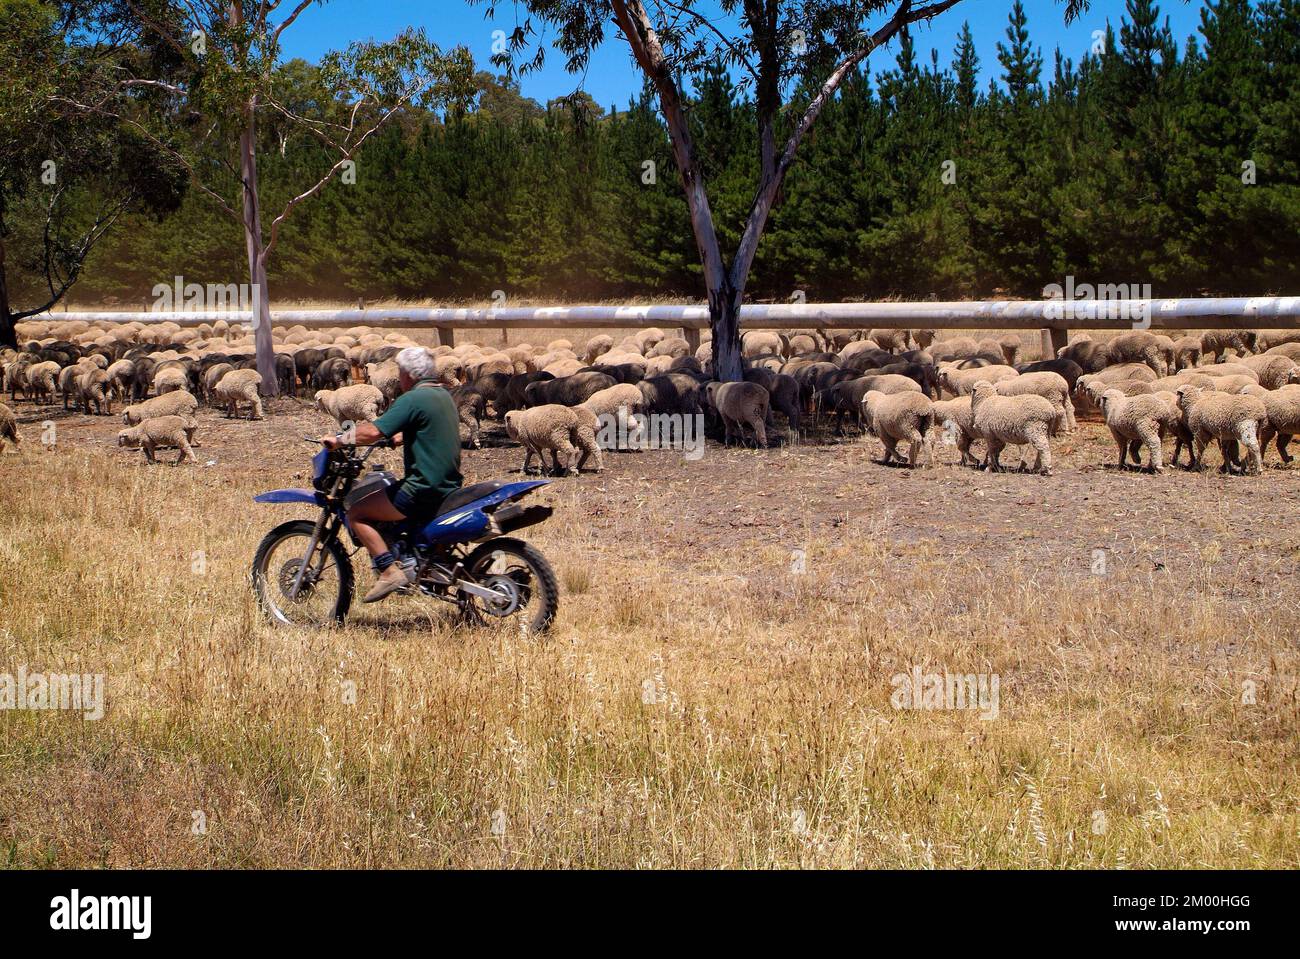 Hawker, Australie - 28 janvier 2008 : agriculteur non identifié sur moto,  berger motorisé pour troupeau de moutons Photo Stock - Alamy